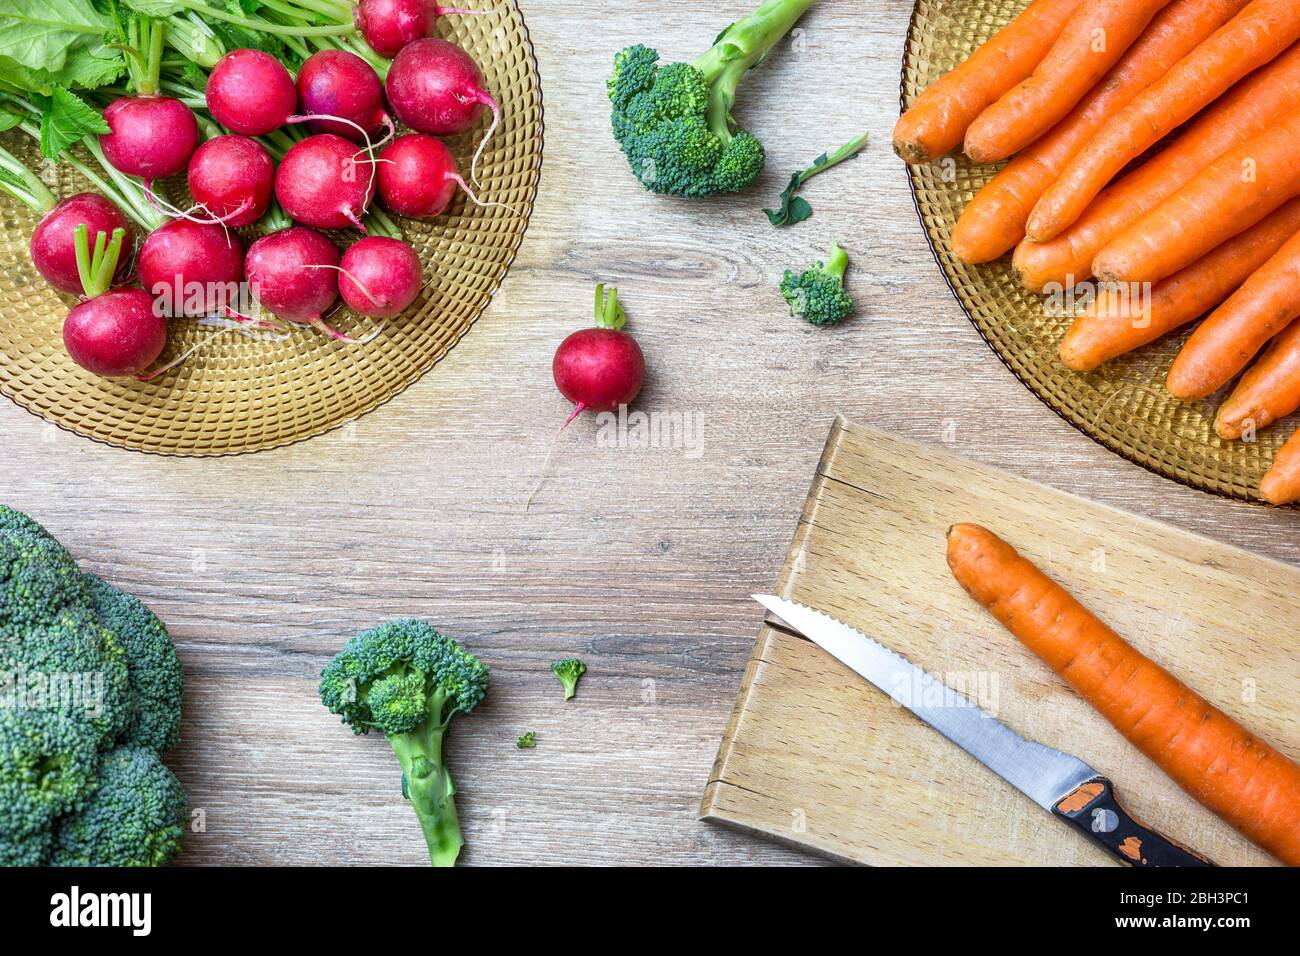 Des radis rouges frais, des carottes et du brocoli sur fond de bois. Vue de dessus avec espace de copie. Concept de nutrition saine. Banque D'Images